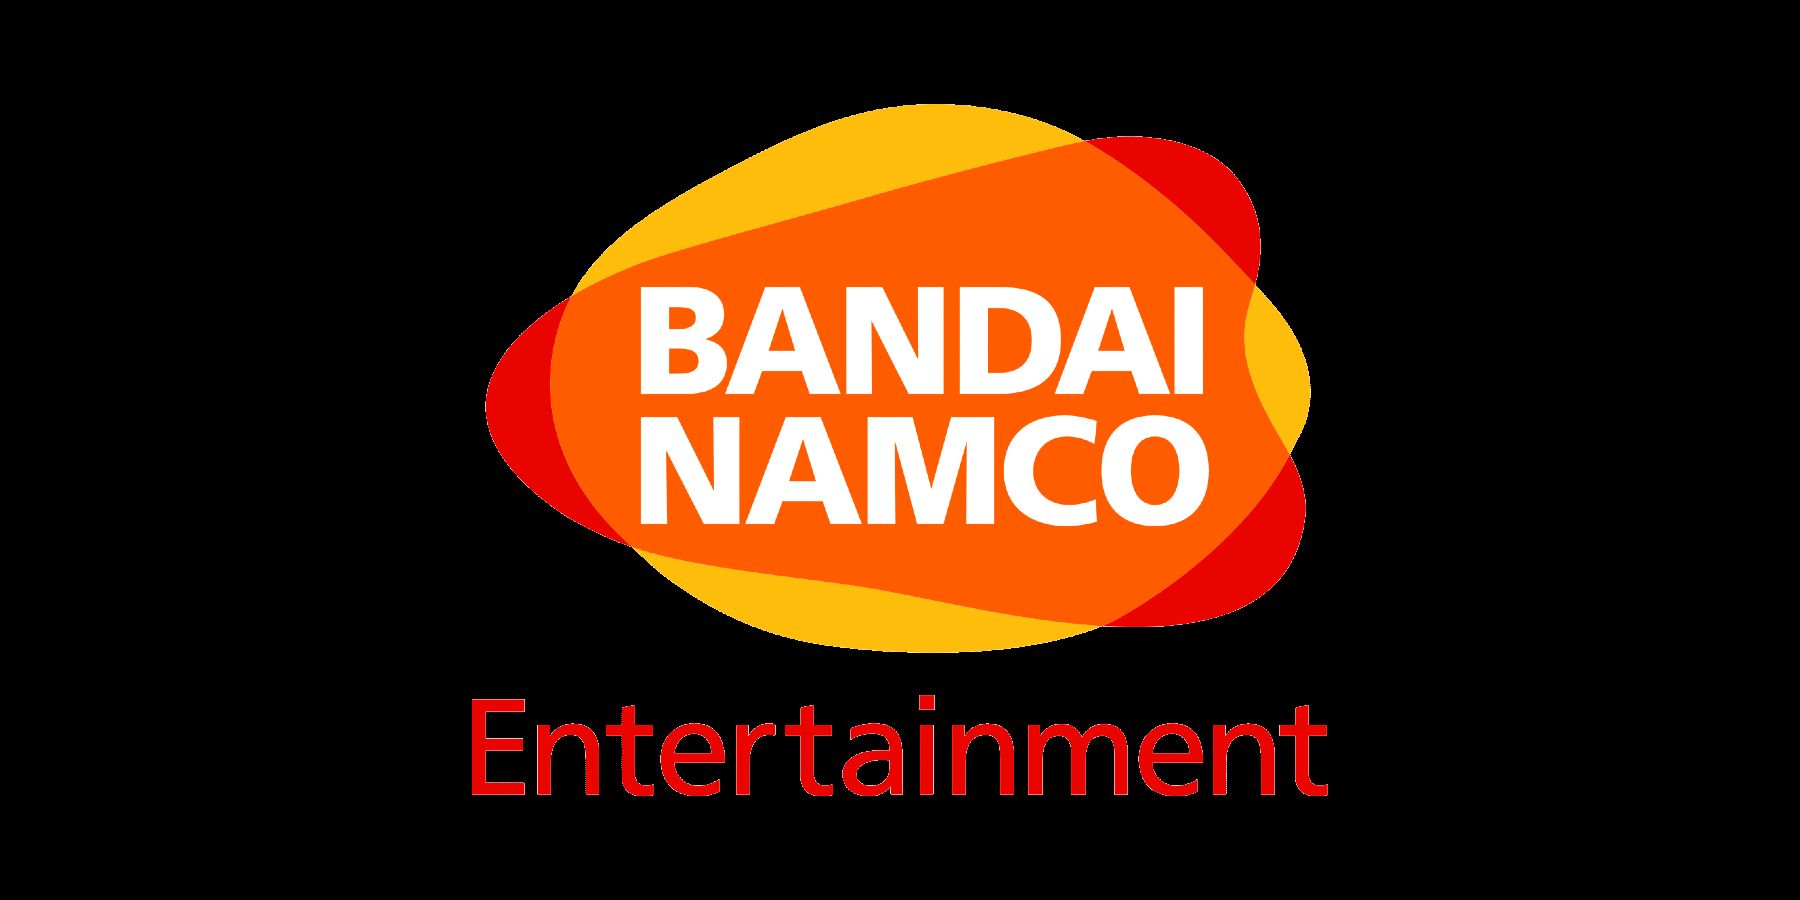 Η Bandai Namco έχει νέο λογότυπο